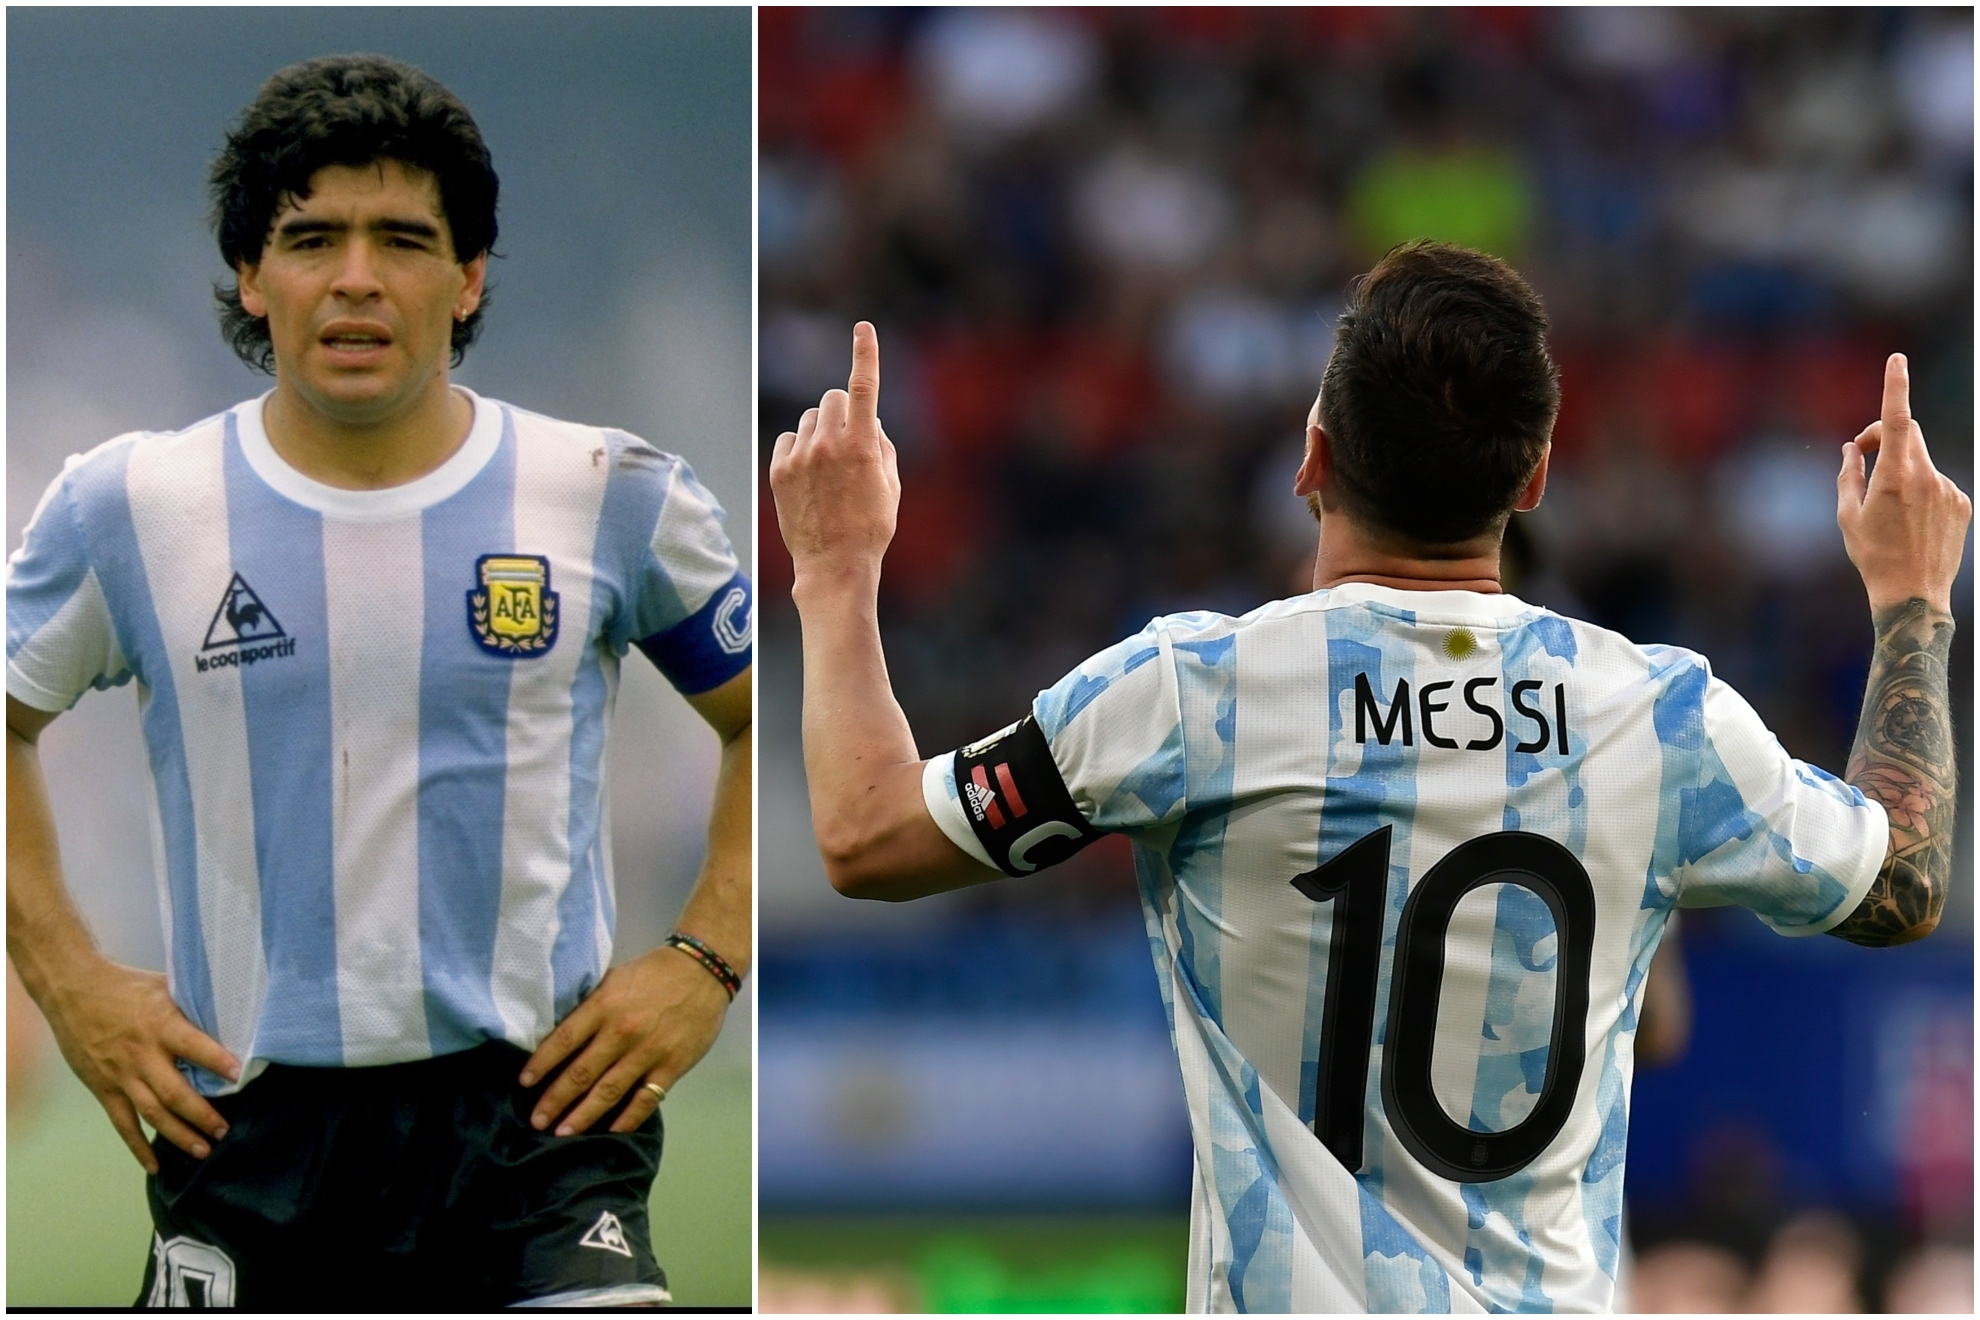 Maradona en el Mundial de 86 y Messi, en una imagen reciente con la Albiceleste.